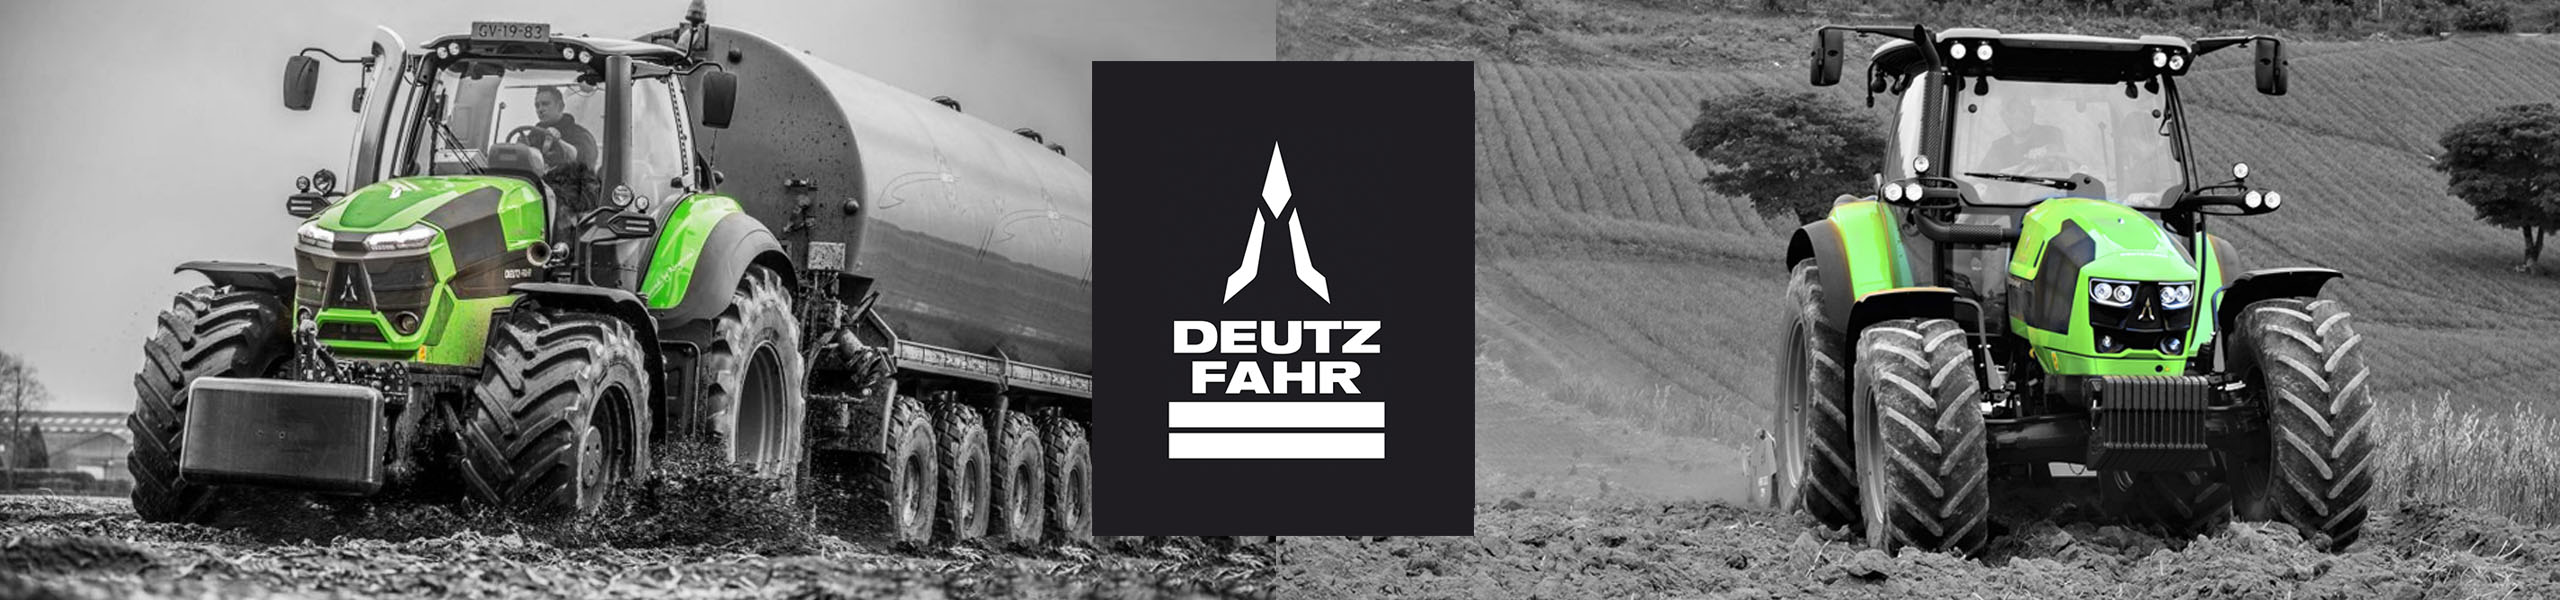 tractores DEUTZ-FAHR